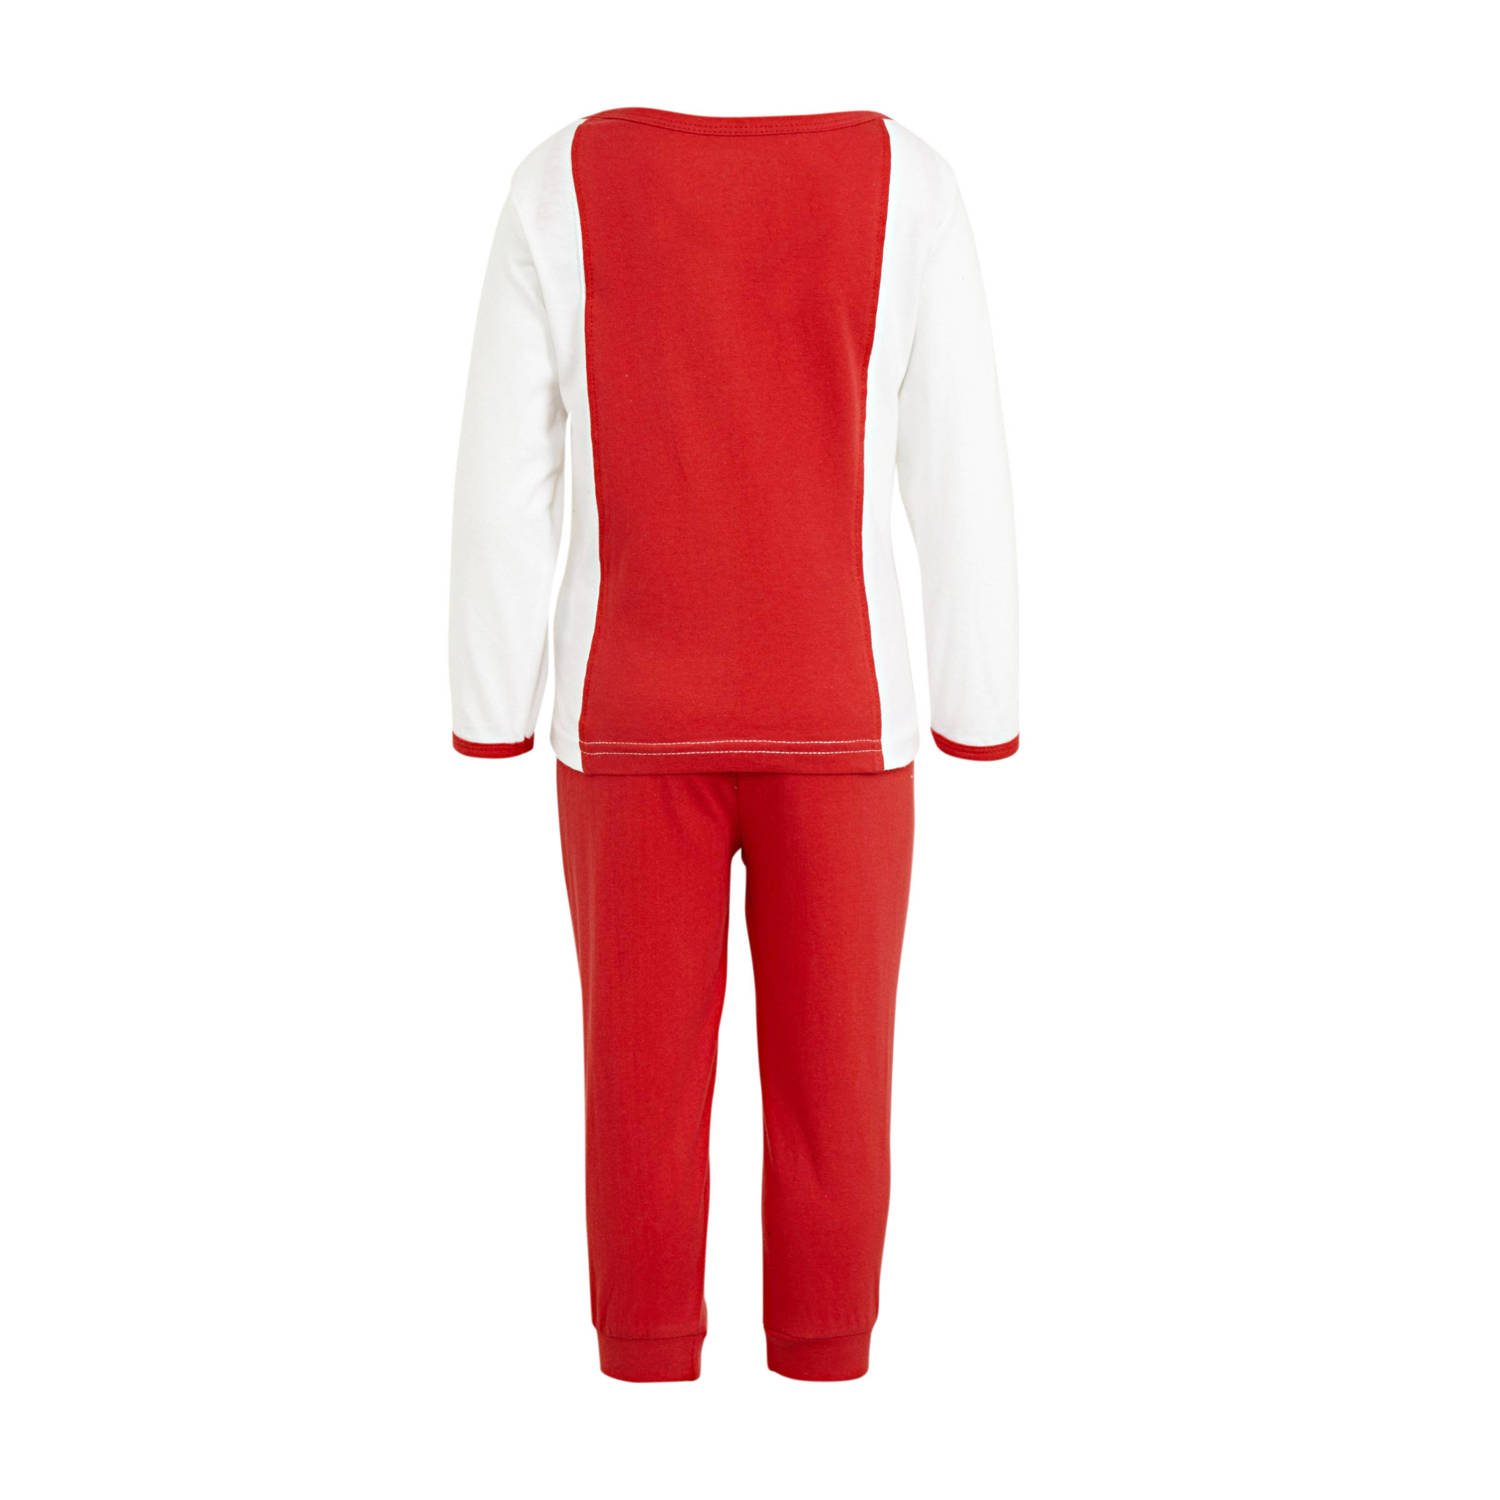 Ajax baby pyjama rood wit